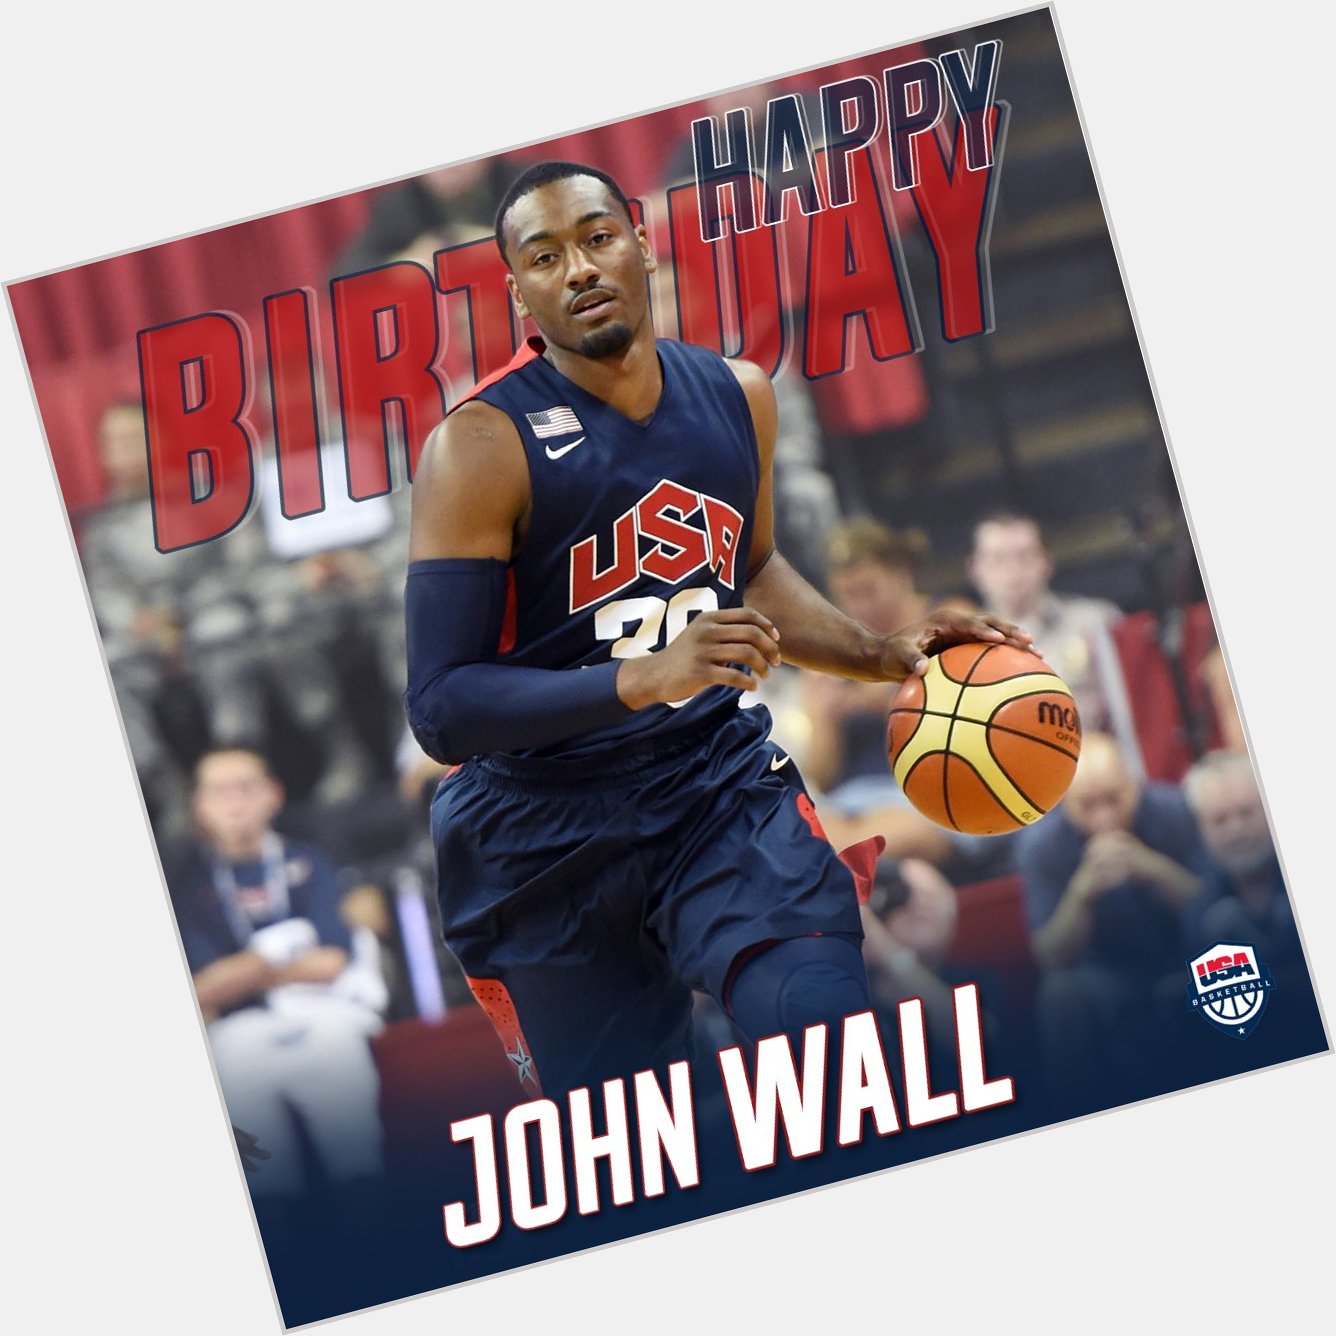 Wishing a happy birthday to John Wall! 